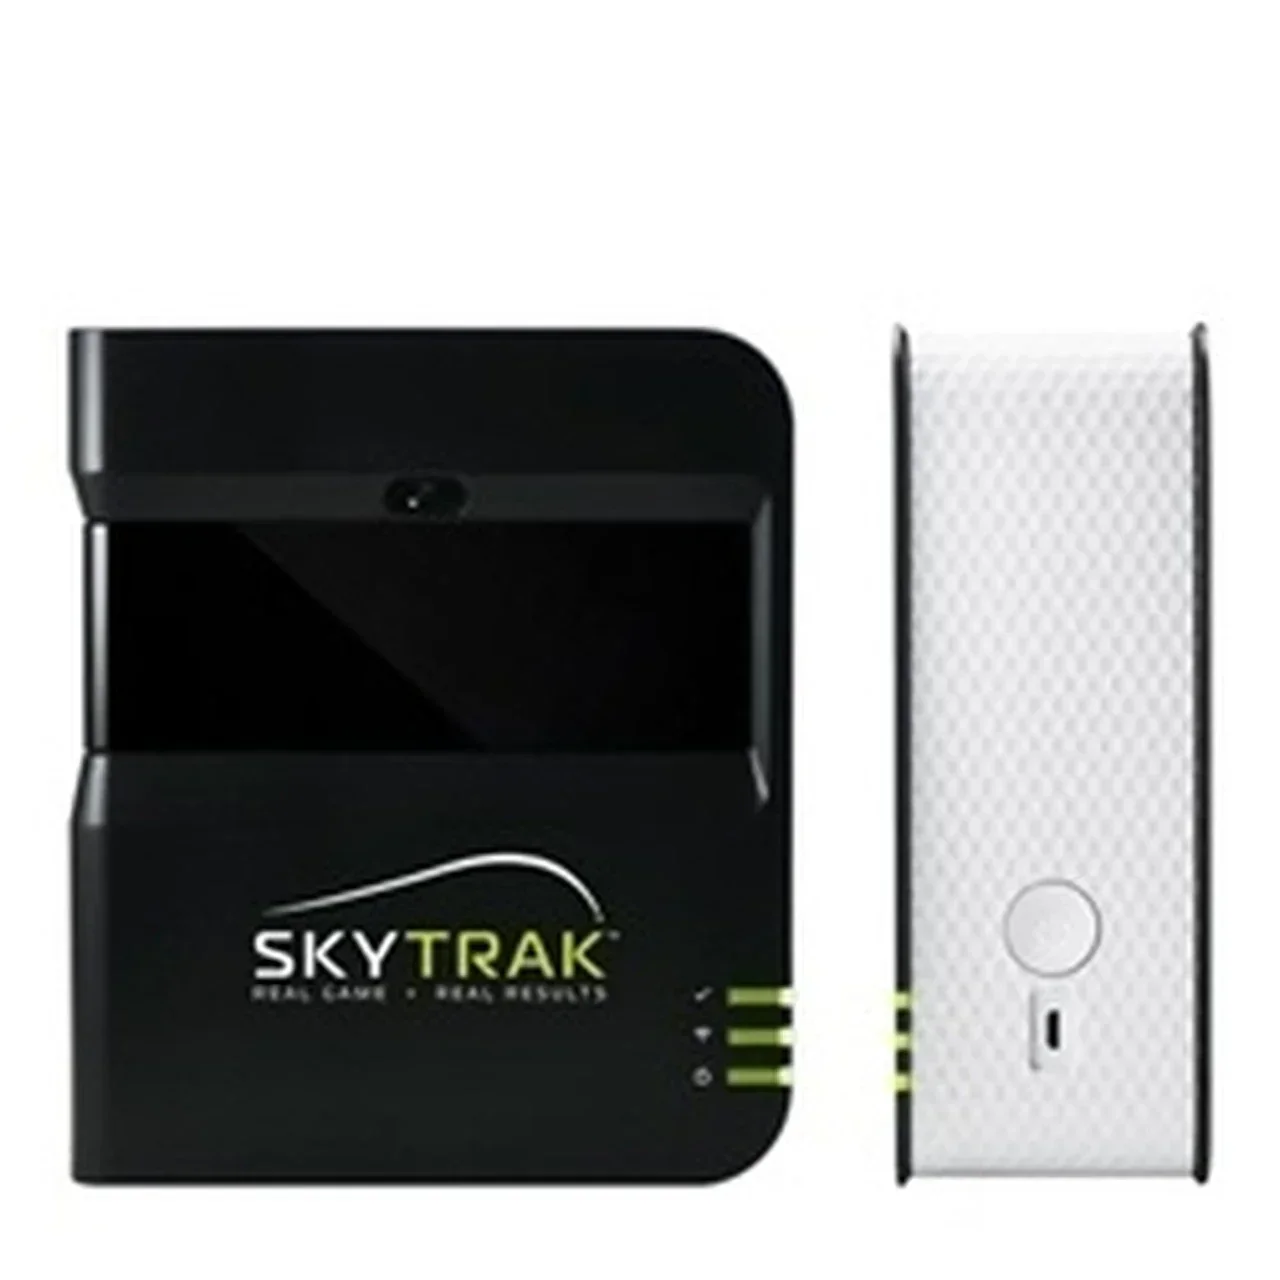 ЛЕТНЯЯ СКИДКА НА 100% НОВЫЙ аутентичный монитор запуска симулятора гольфа SkyTrak + защитный чехол Skytrak Изображение 0 